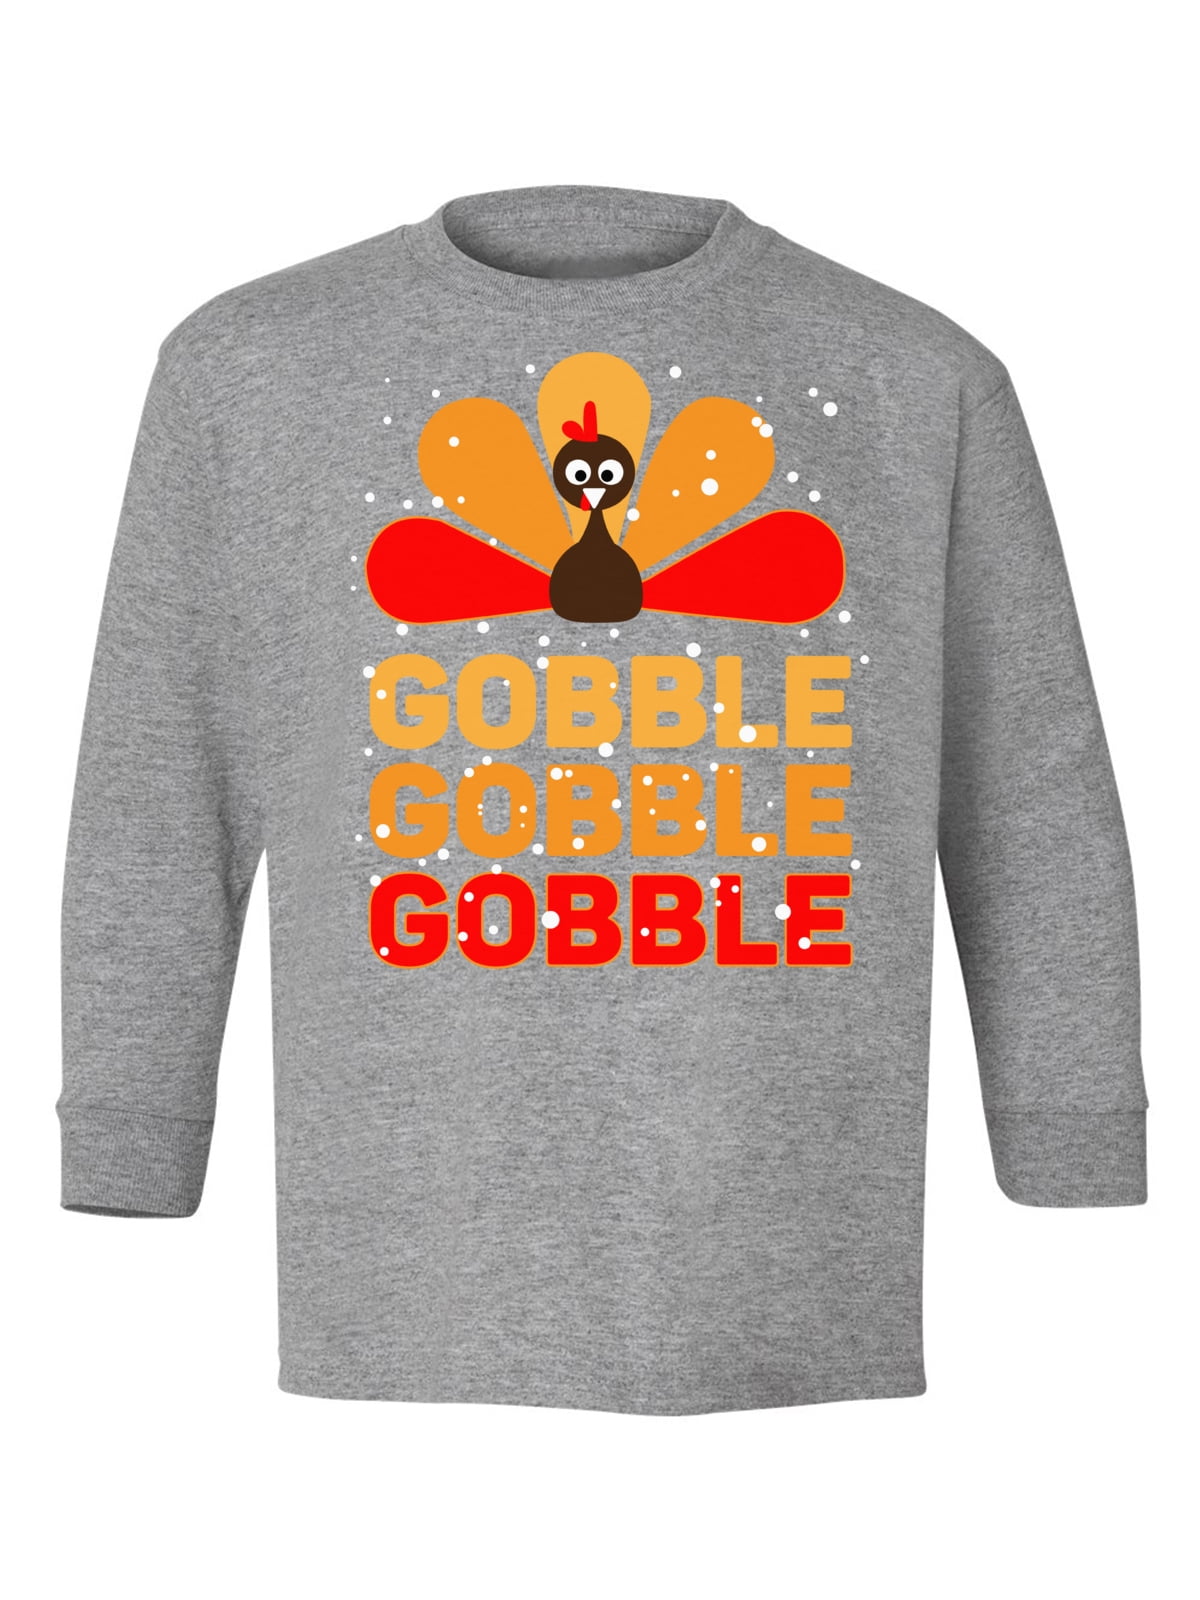 Turkey Gobble Gobble Shirt Thanksgiving Toddler Kids Long Sleeve Tshirt 